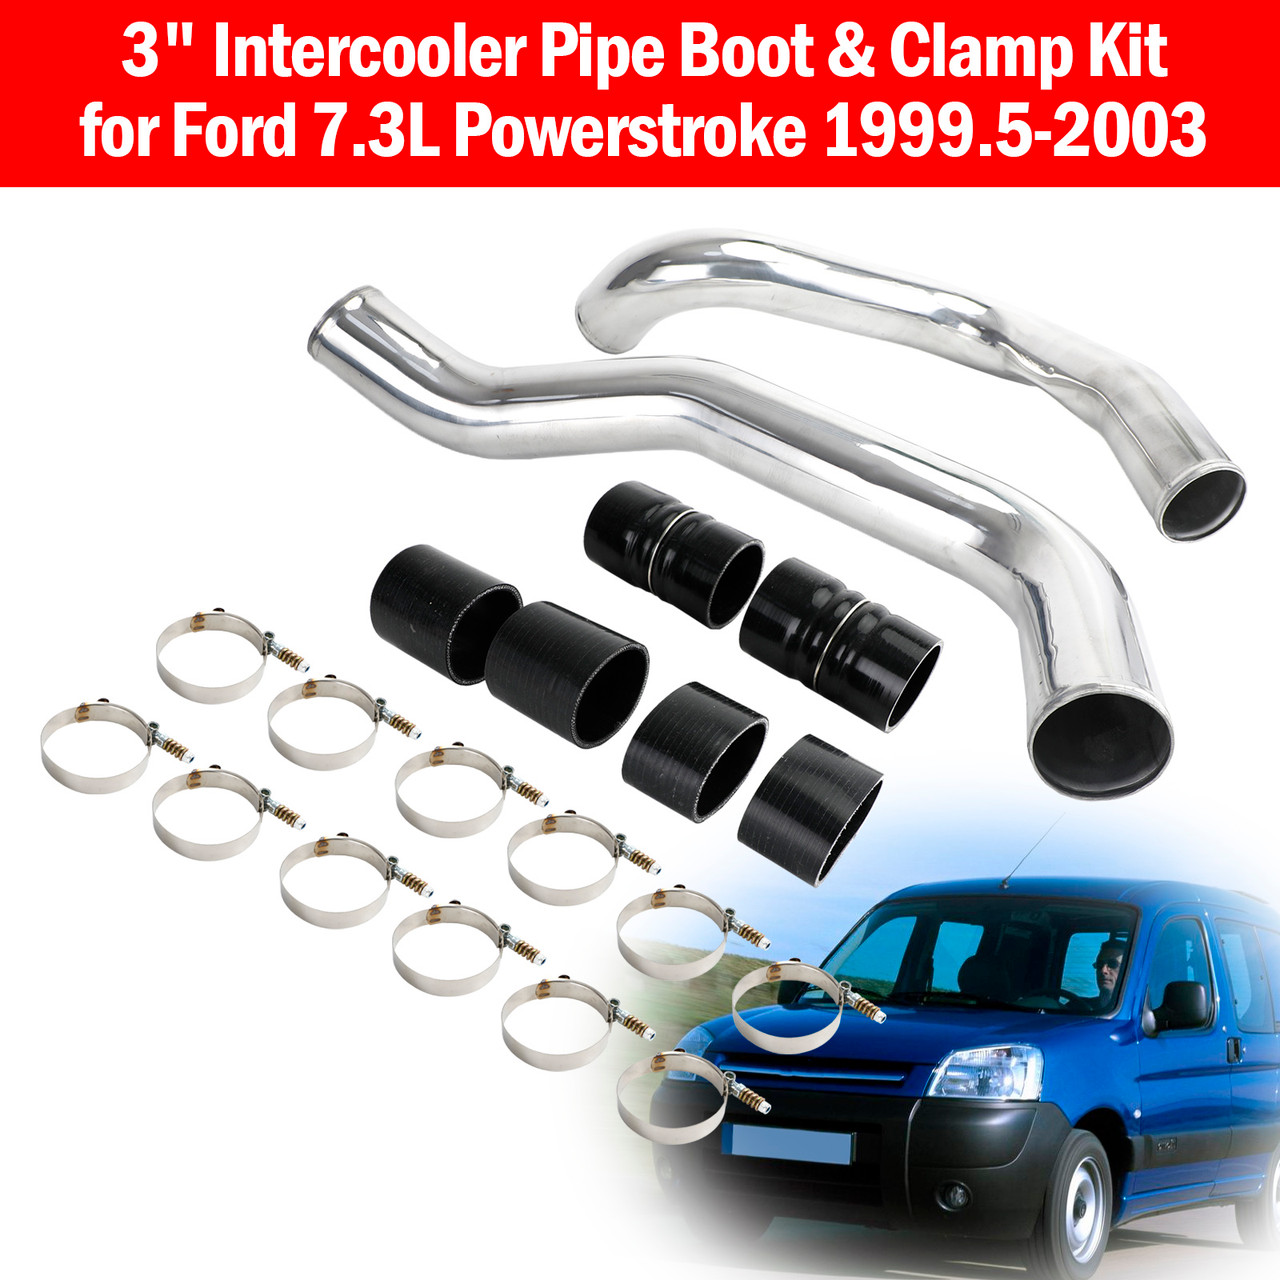 Peugeot 406 95-04 2.0 HDI 3" Intercooler Pipe Boot & Clamp Kit